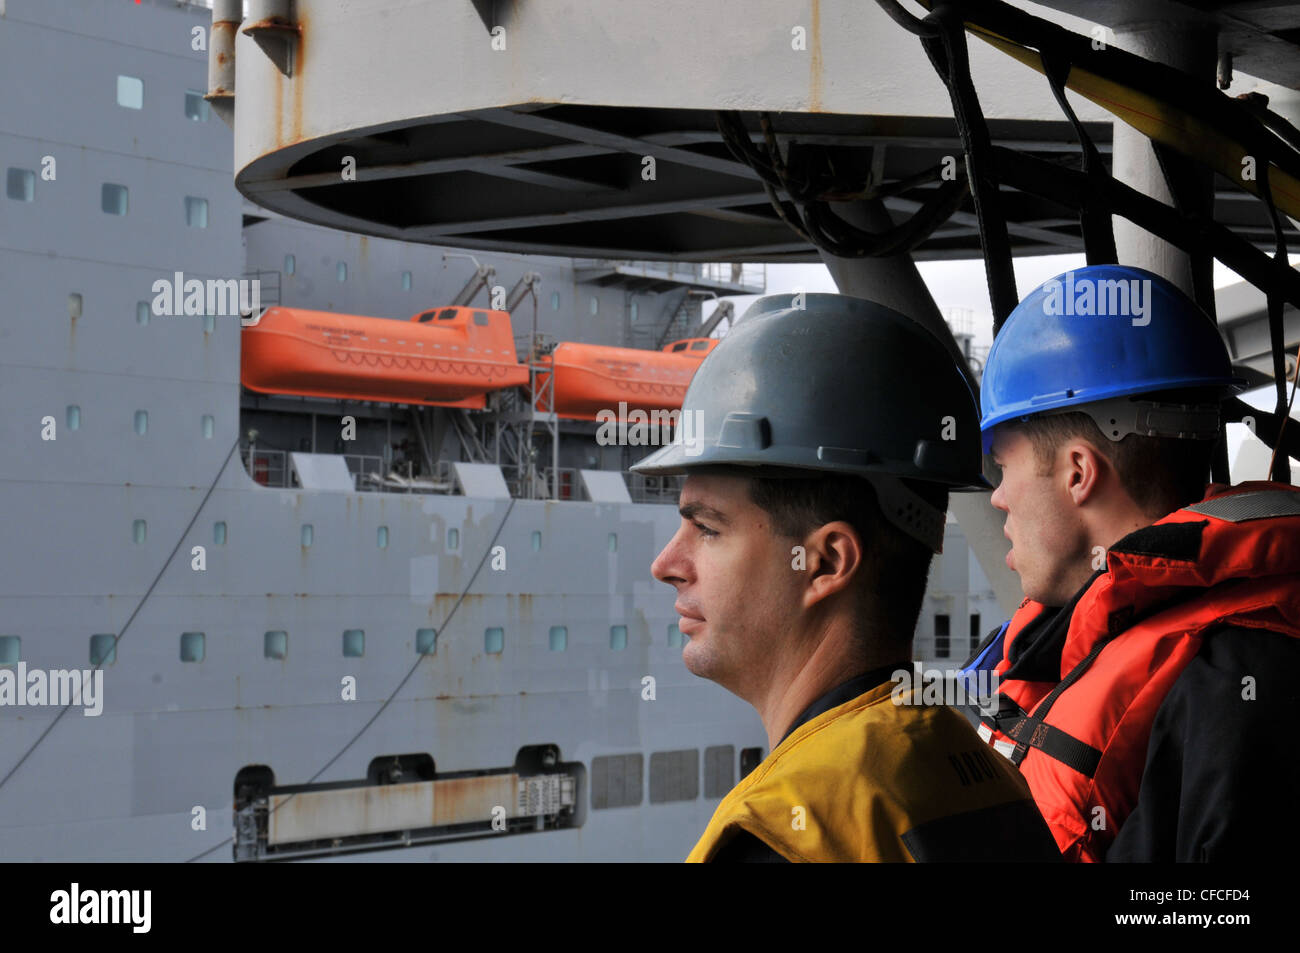 El compañero de Boatwain de la 3ra clase Jonathan Lawson del buque de asalto anfibio USS Kearsarge (LHD 3) observa el buque de carga/munición seca USNS Robert E. Peary (T-AKE 5) mientras los buques se preparan para un reabastecimiento en el mar. Kearsarge está en marcha, completando la capacitación básica del Grupo de capacitación de afloat 1.3. Foto de stock